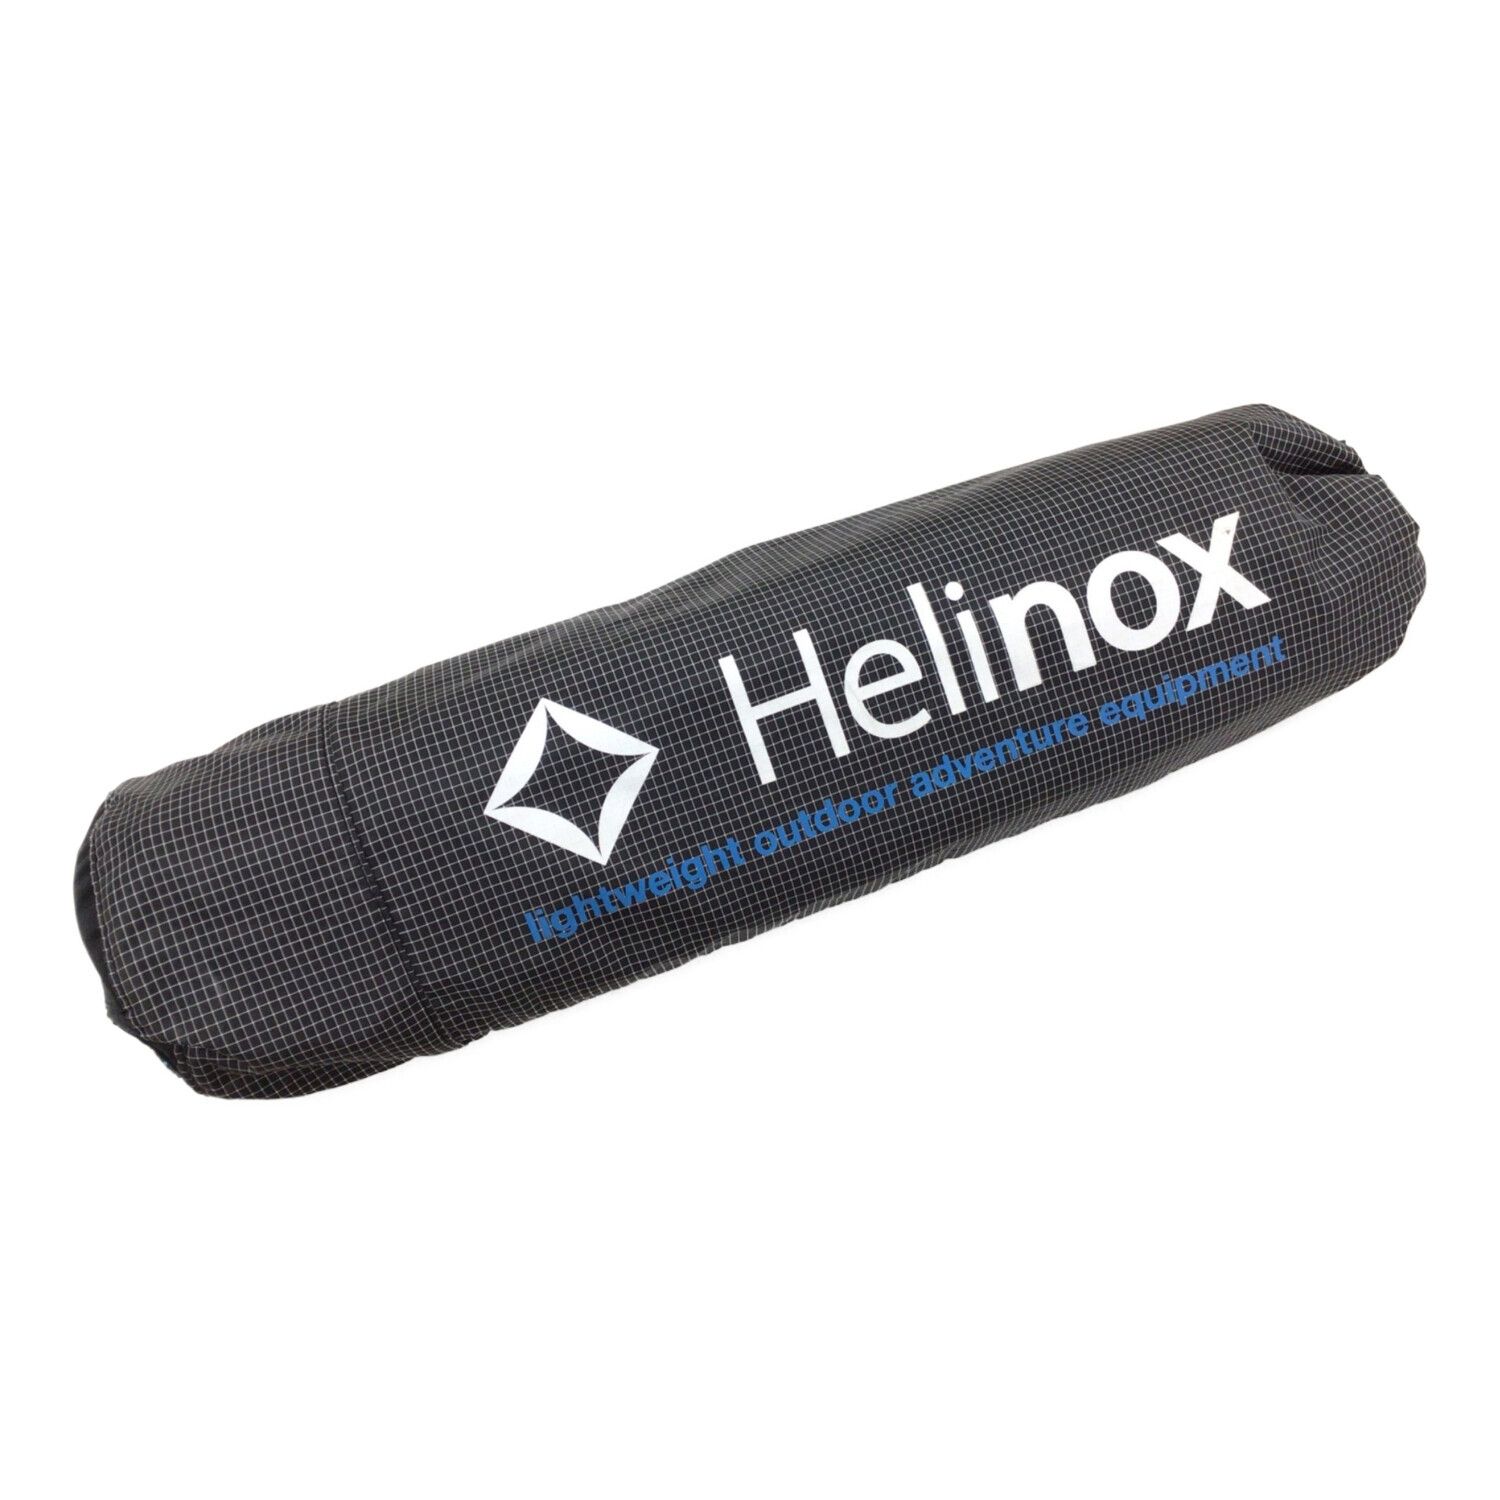 Helinox (ヘリノックス) コット ブラックxホワイト ライトコット ...